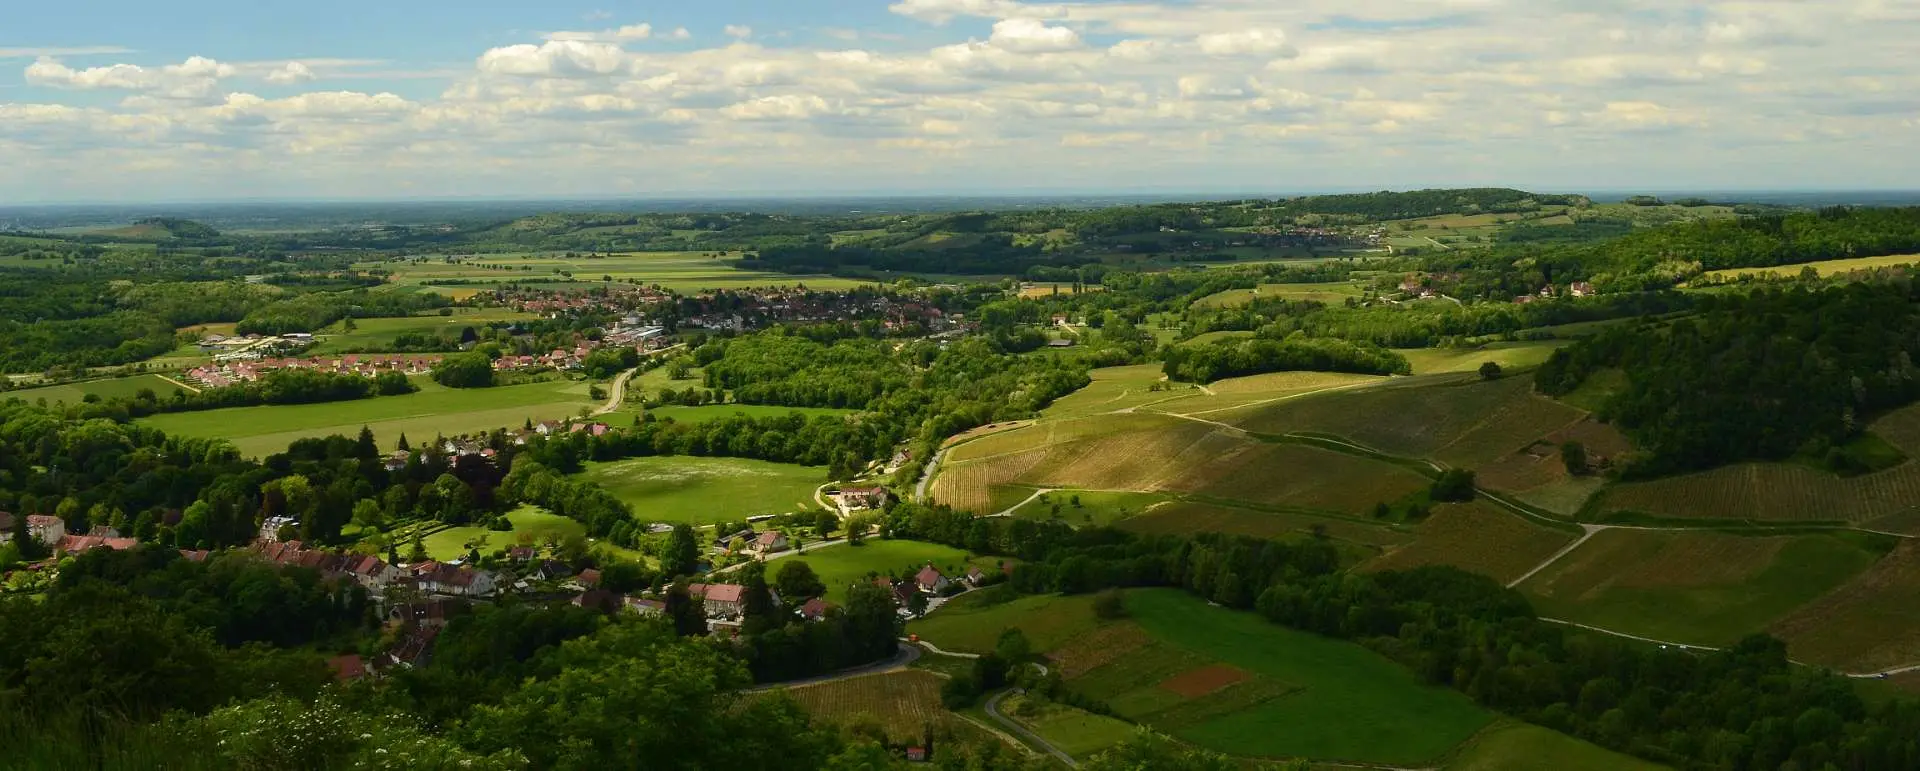 Bourgogne-Franche-Comté - the destination for train travelers